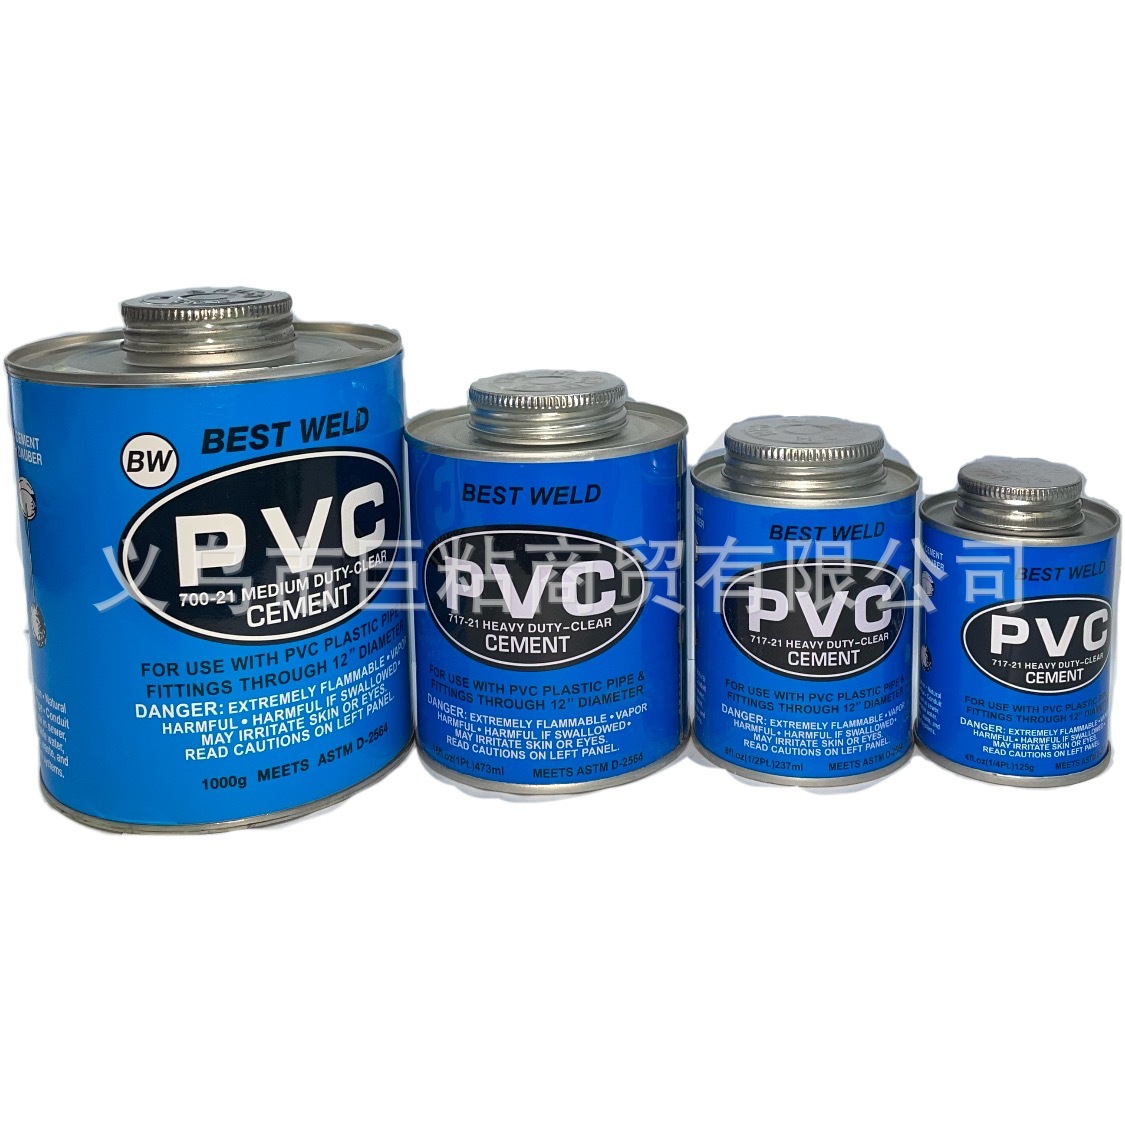 PVC给排水管道专用胶管件的粘接PVC胶合剂有效的粘接ABS工程胶